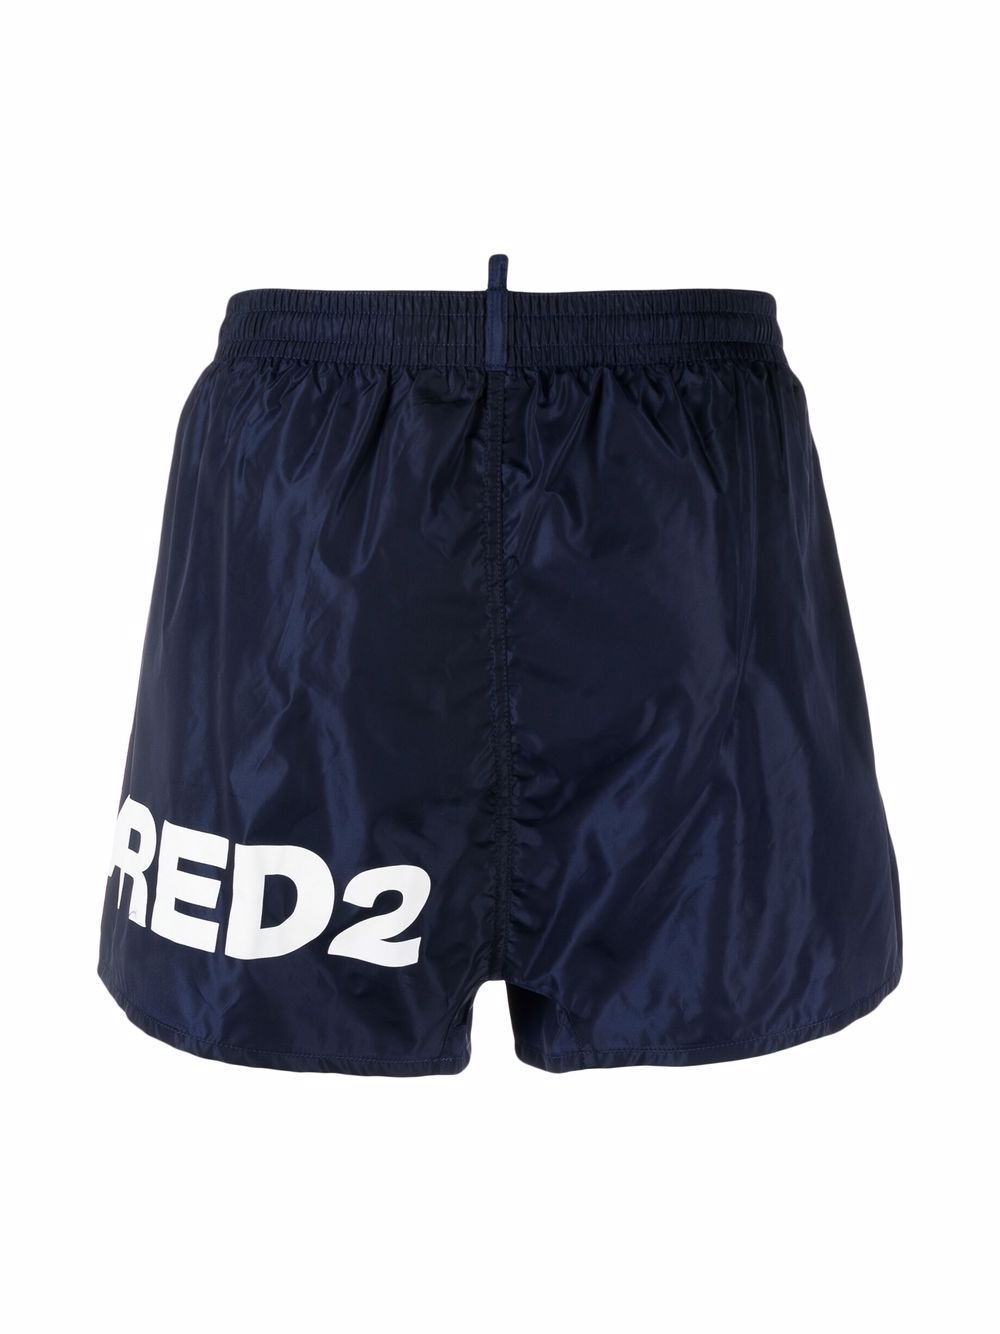 Dsquared2 Logo Swim Shorts - 412 Blue - Escape Menswear